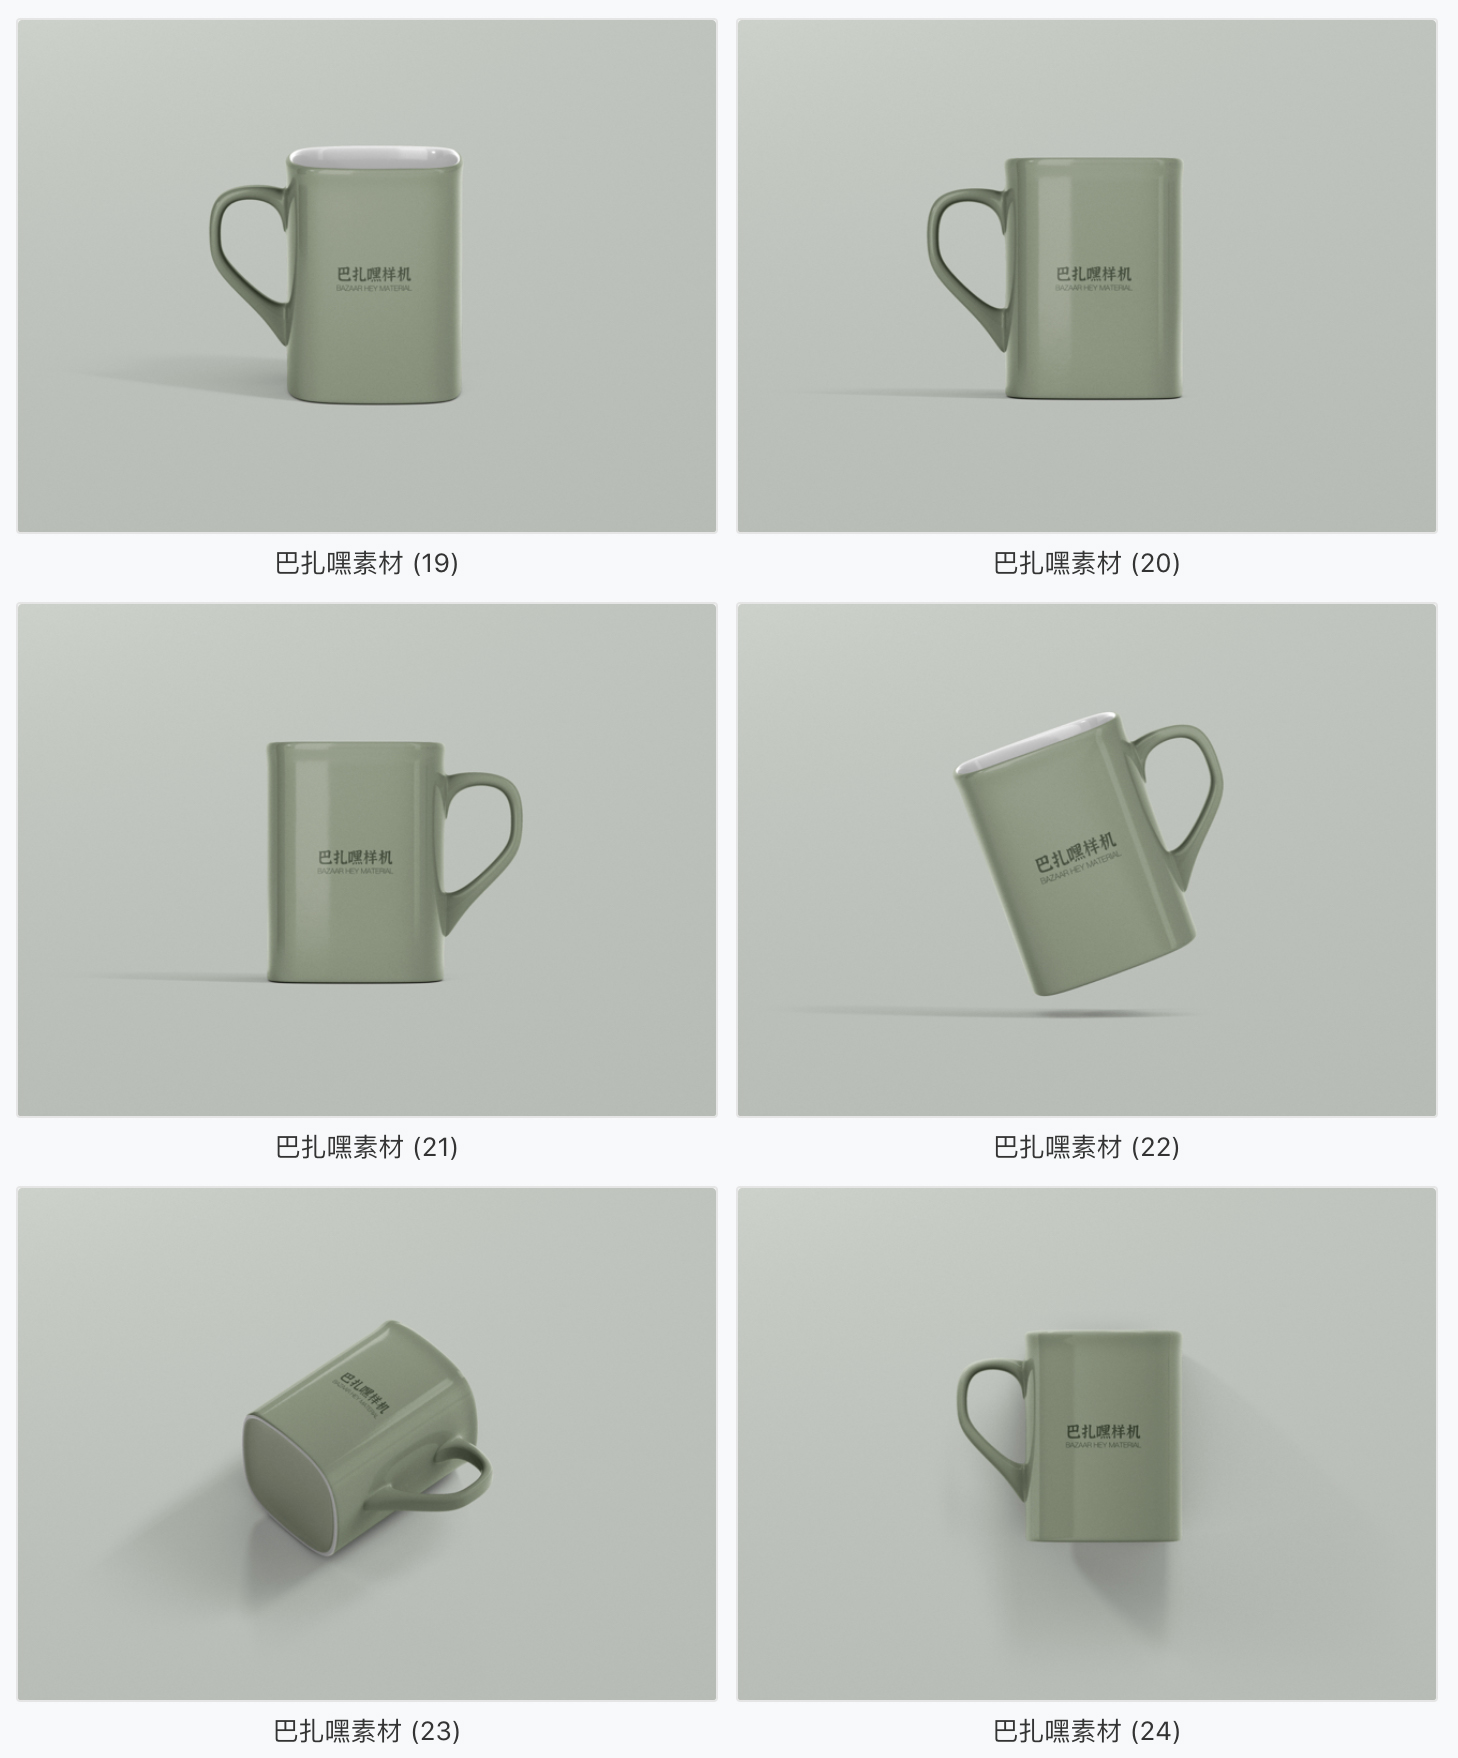 【杯子样机】58套马克杯咖啡杯子智能贴图模板样机模板茶壶效果图展示